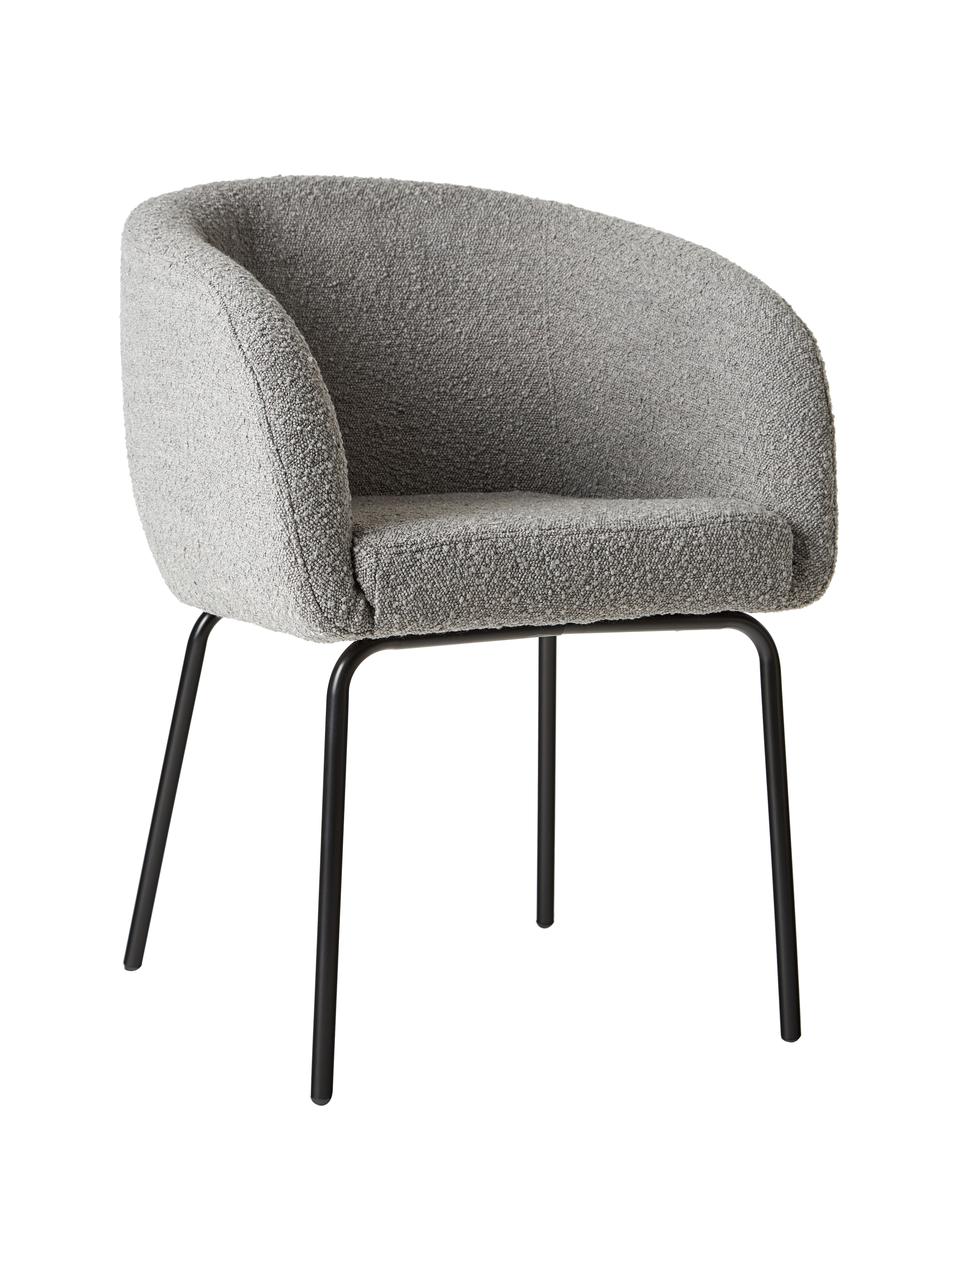 Bouclé fauteuils Alani in grijs, 2 stuks, Bekleding: 80 % polyester, 20 % acry, Poten: gepoedercoat metaal, Grijs, B 58 x H 78 cm